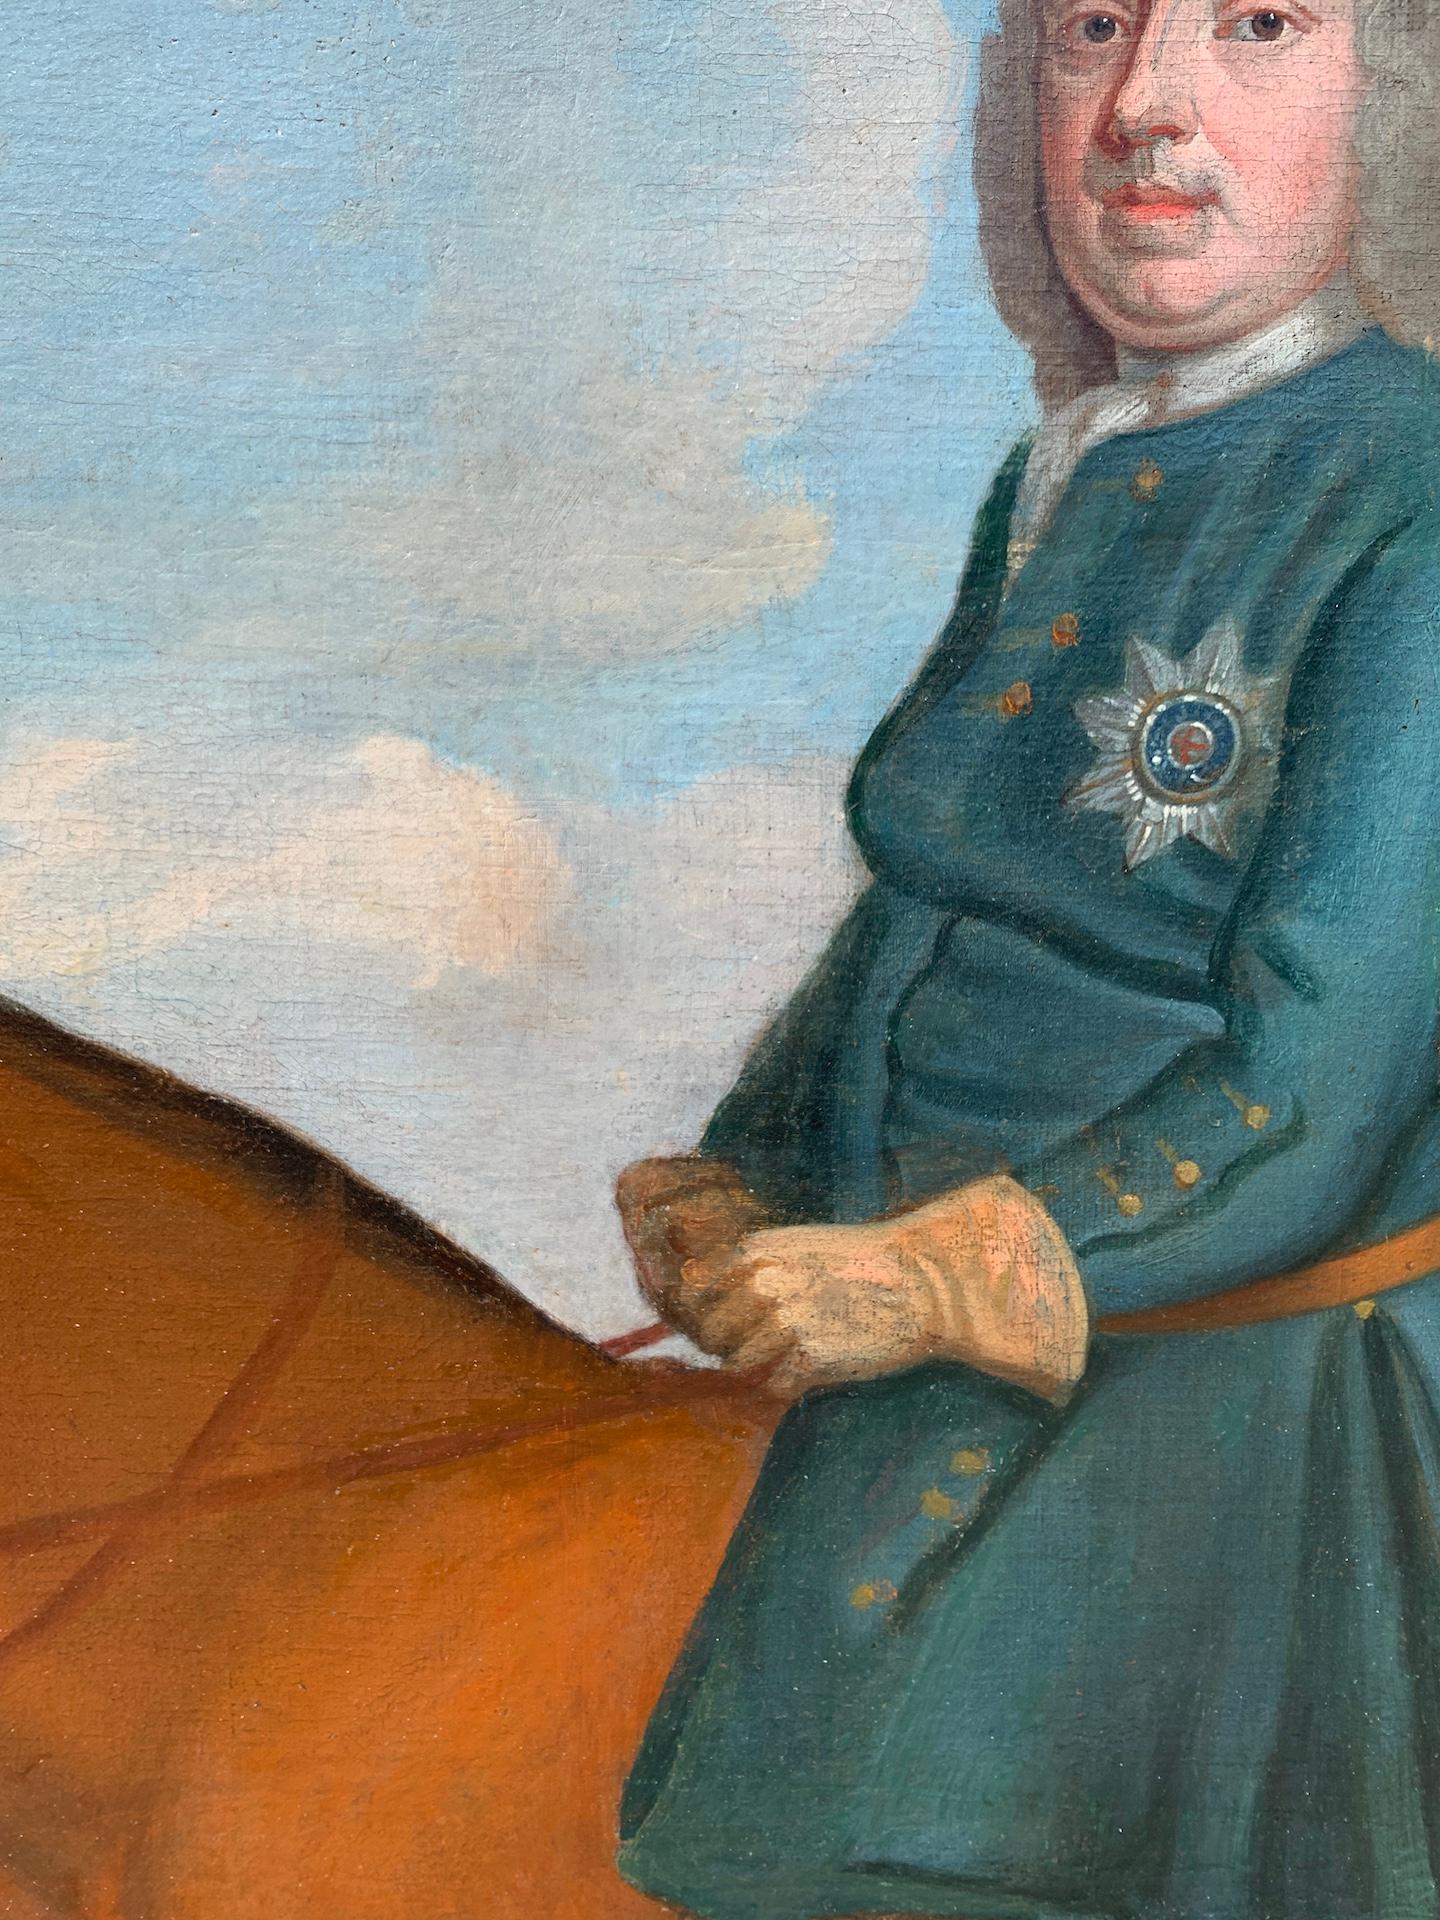 18th century duke